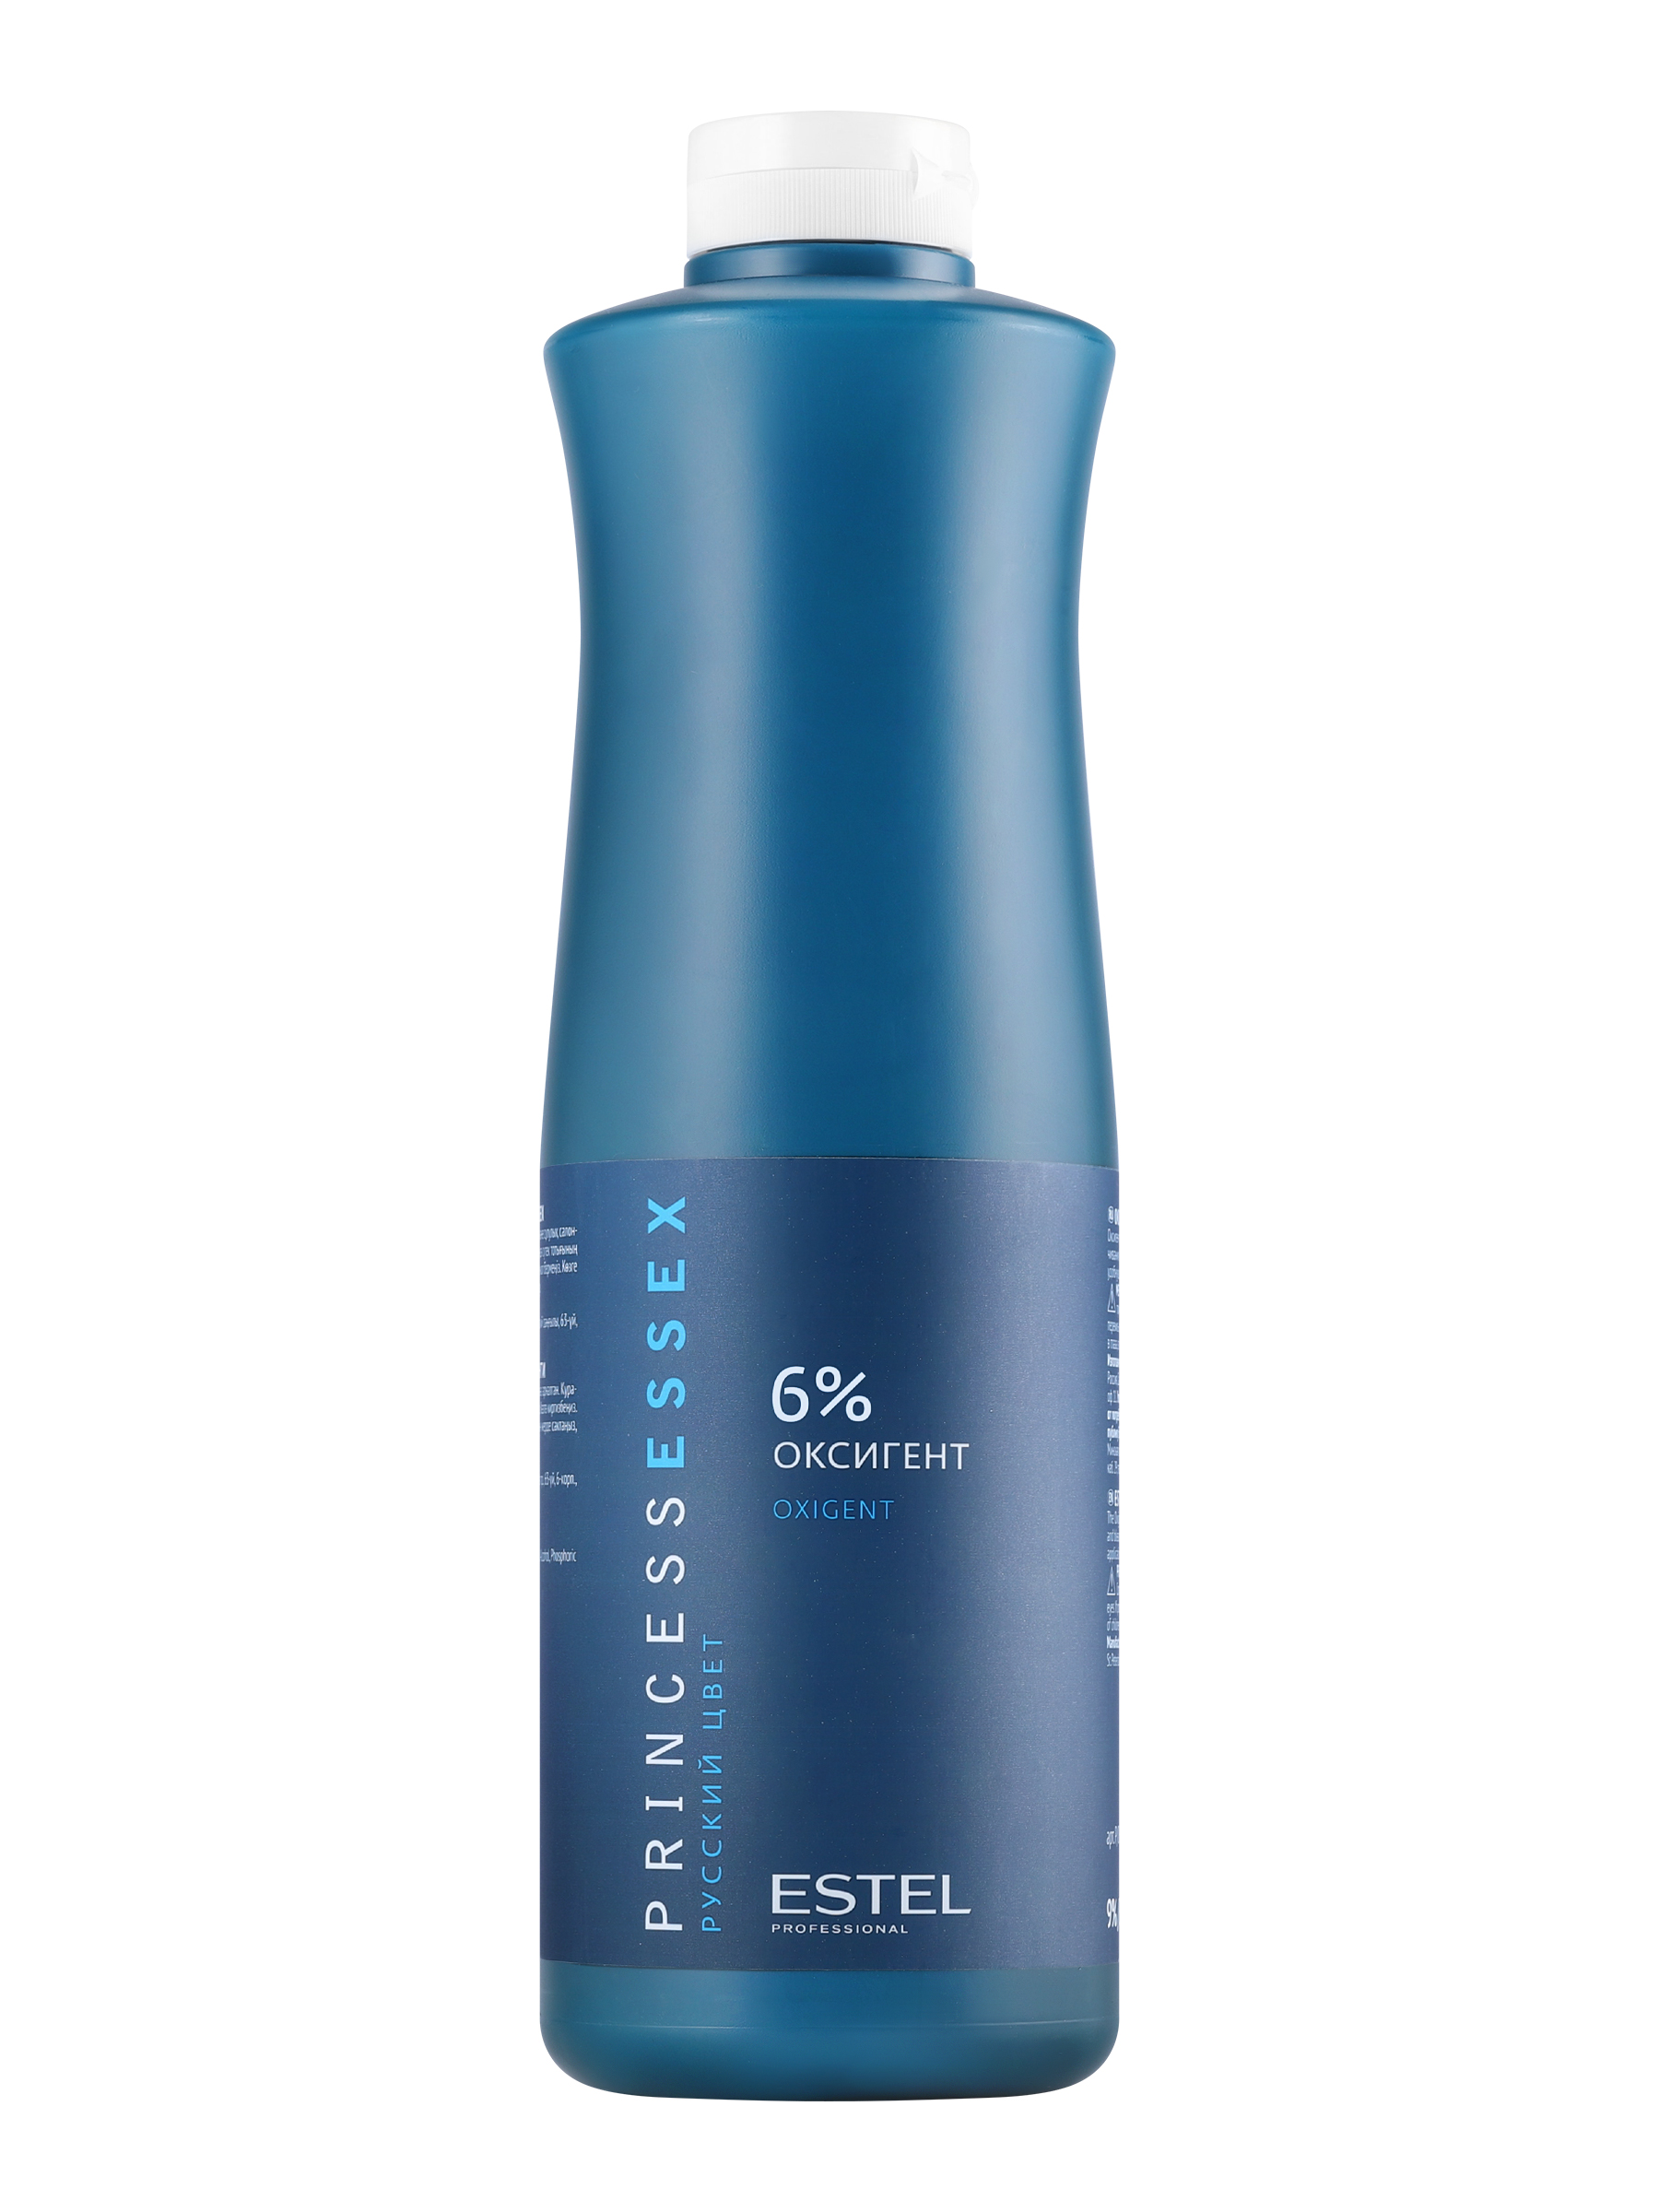 Проявитель Estel Essex Oxigent 6% 1 л проявитель indola professional cream developer 30 vol 9% 1000 мл